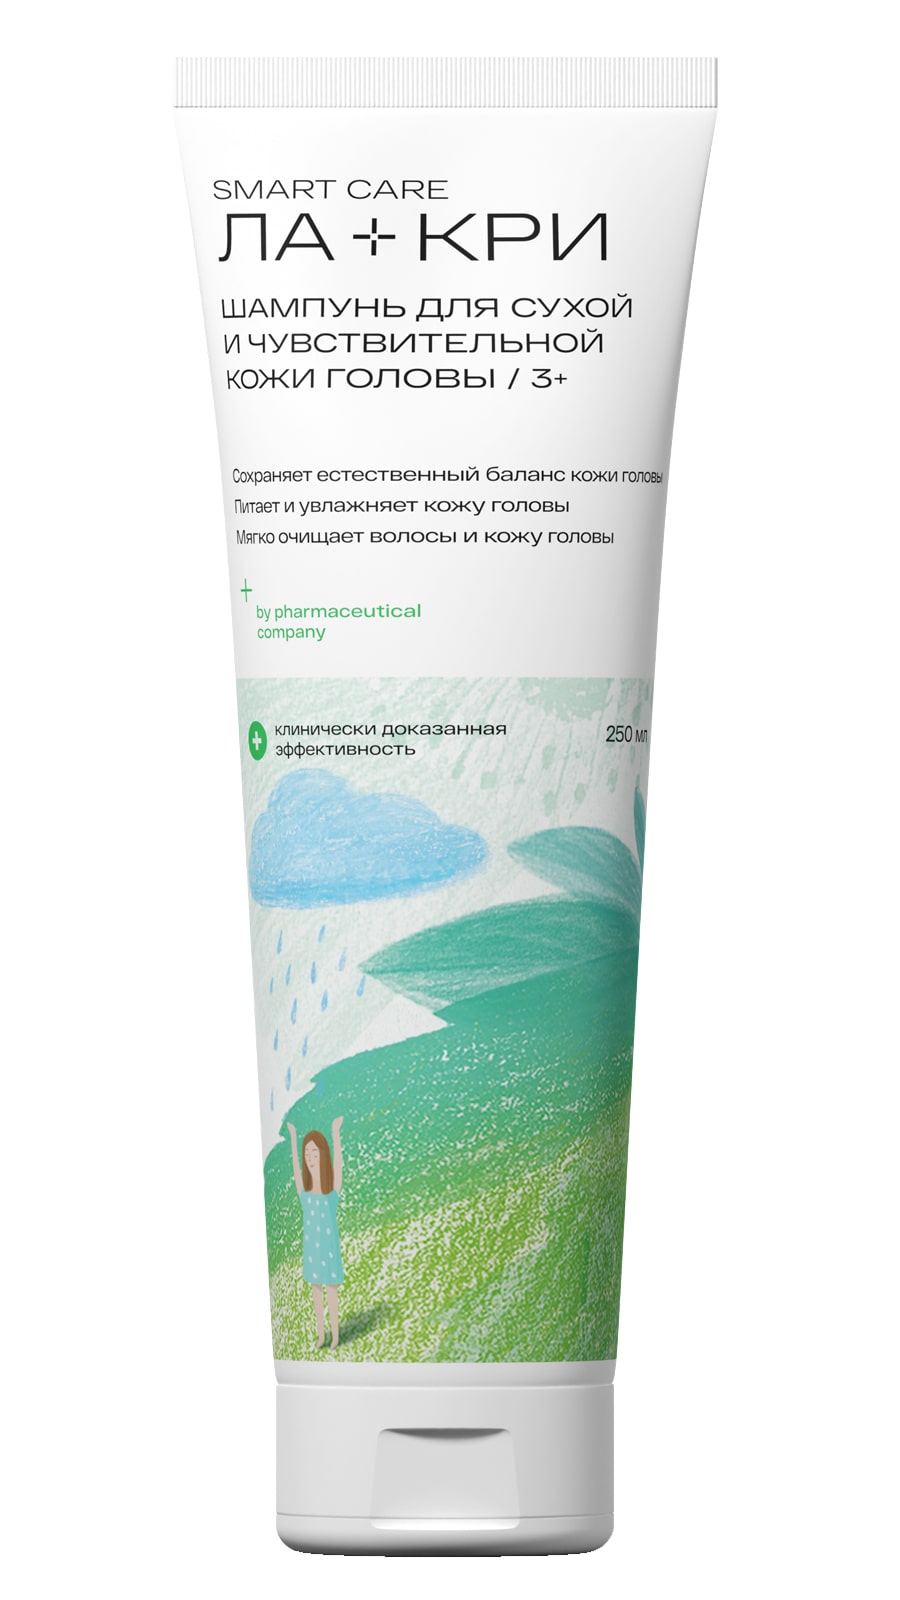 Ла-Кри Шампунь для сухой и чувствительной кожи головы 3+, 250 мл (Ла-Кри, Smart Care)